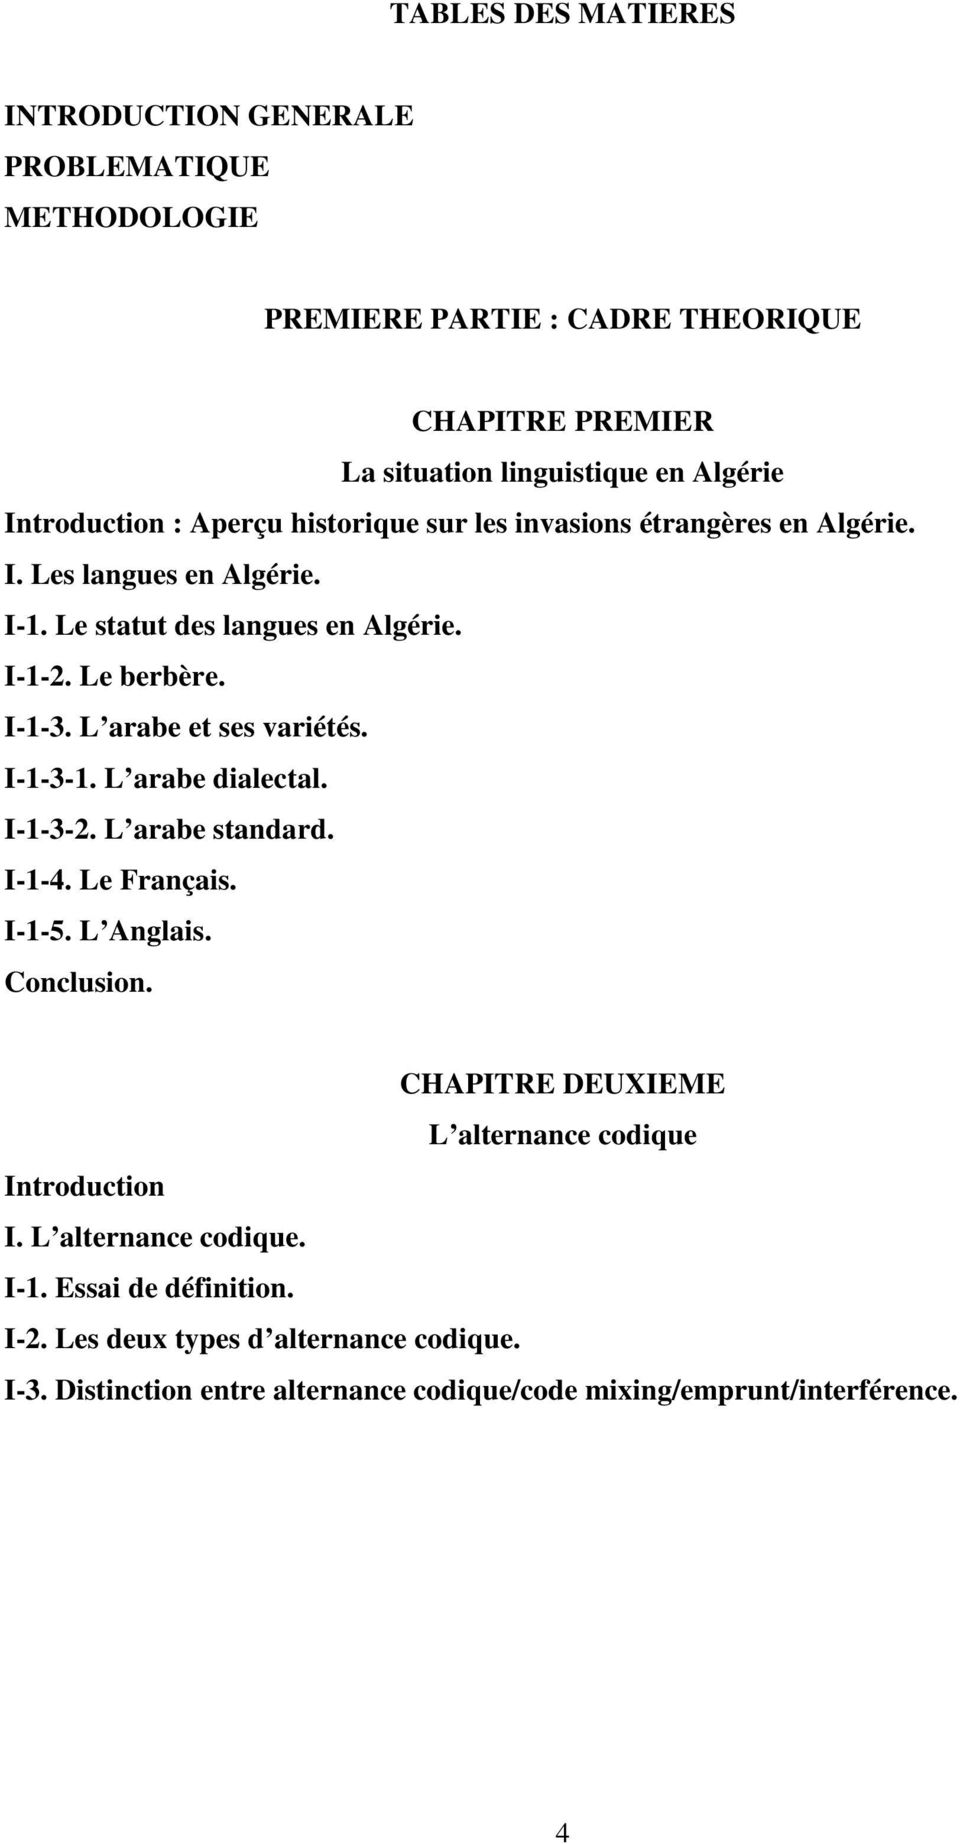 L arabe et ses variétés. I-1-3-1. L arabe dialectal. I-1-3-2. L arabe standard. I-1-4. Le Français. I-1-5. L Anglais. Conclusion.